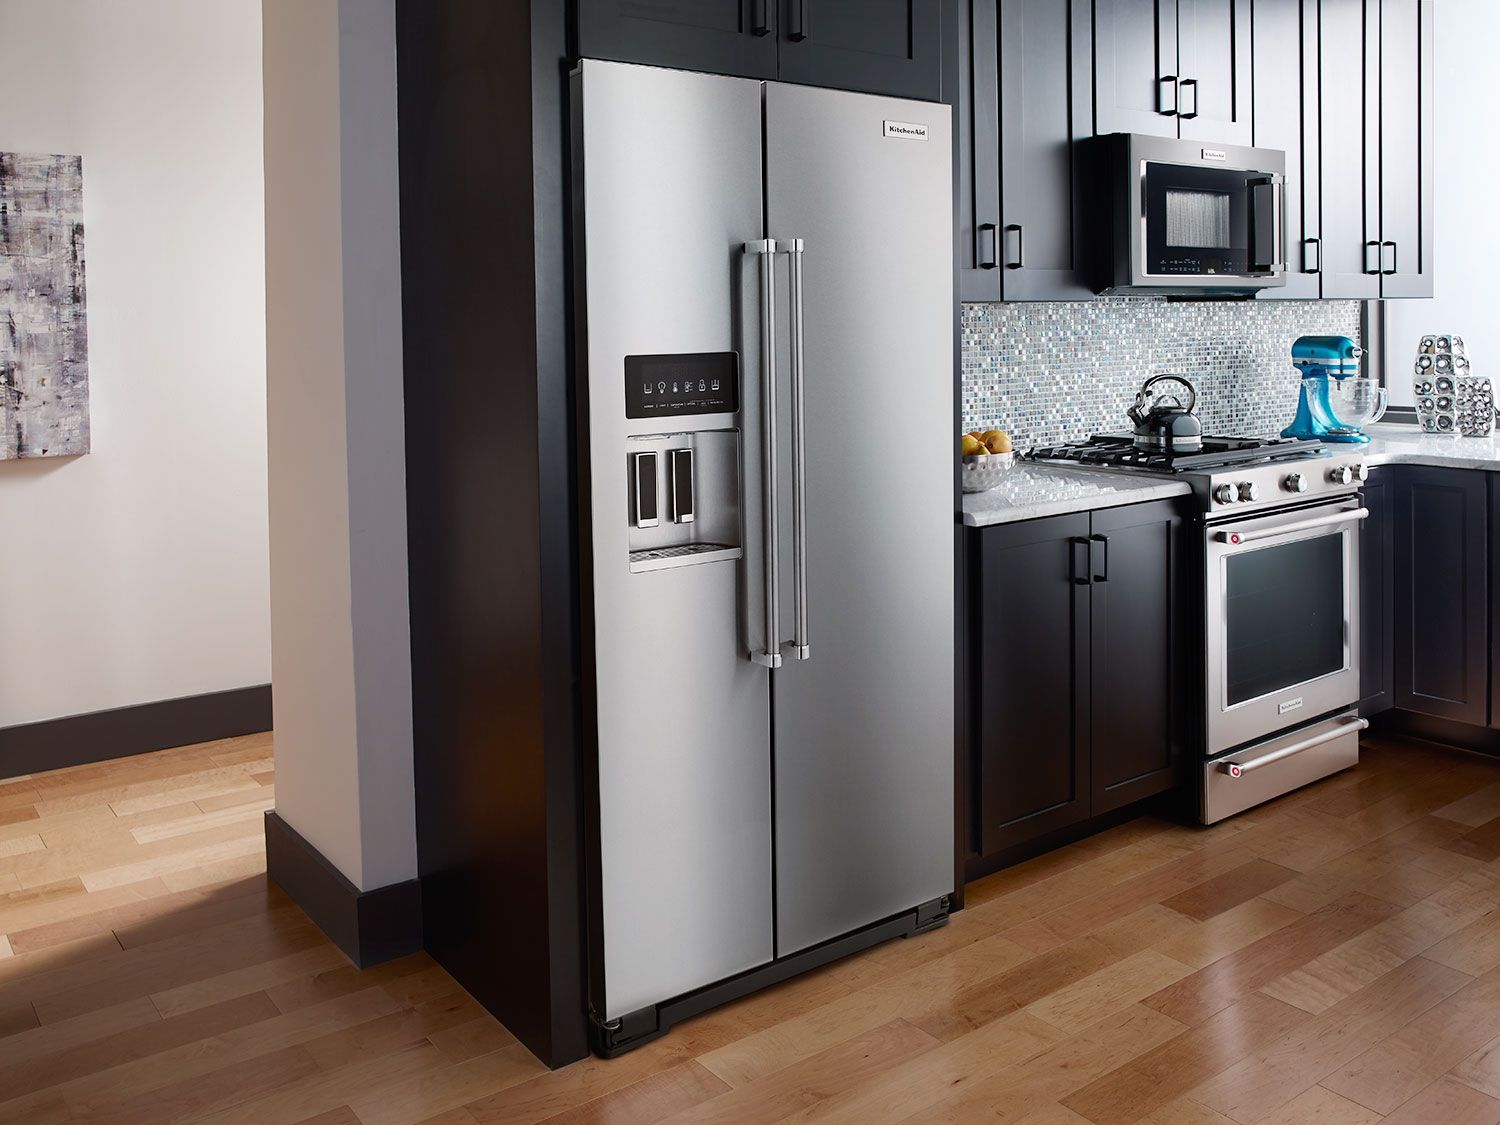 Kinh nghiệm chọn mua tủ lạnh cho nhà ở chung cư